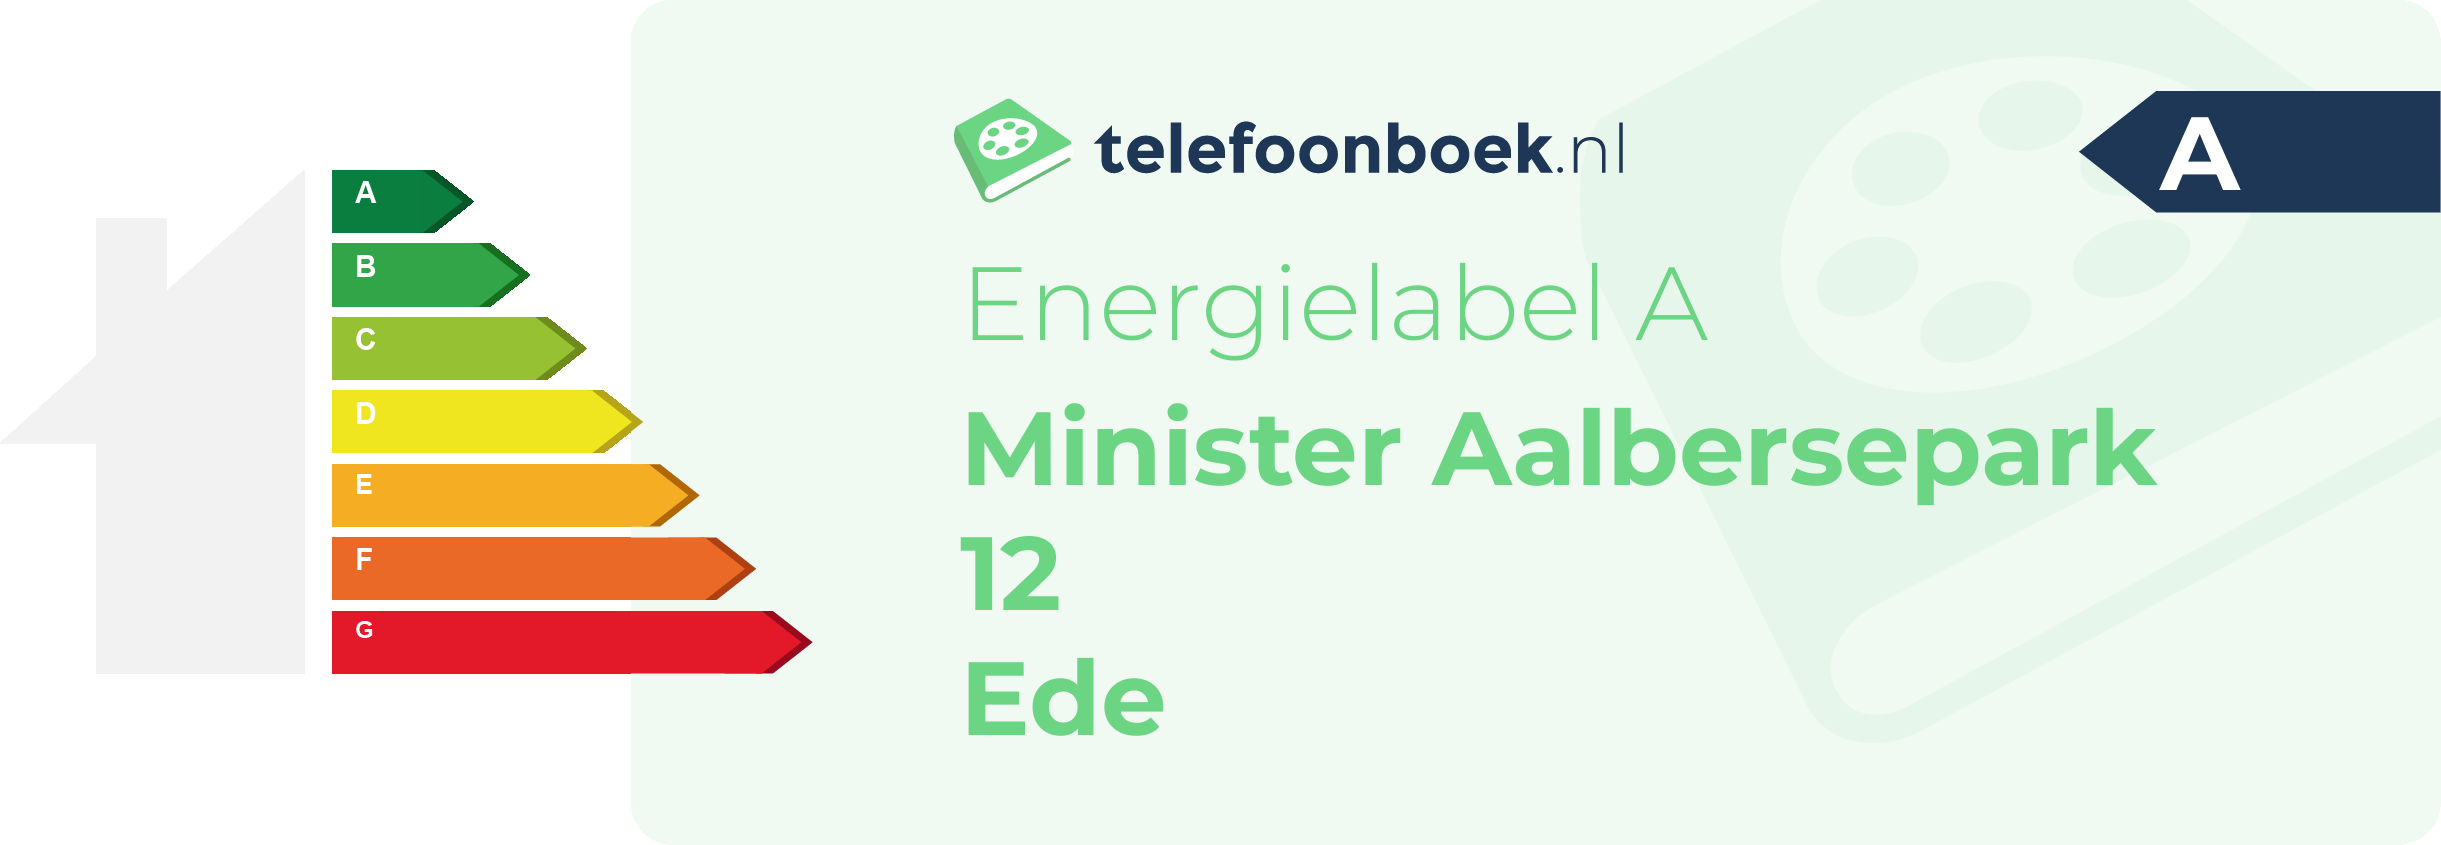 Energielabel Minister Aalbersepark 12 Ede